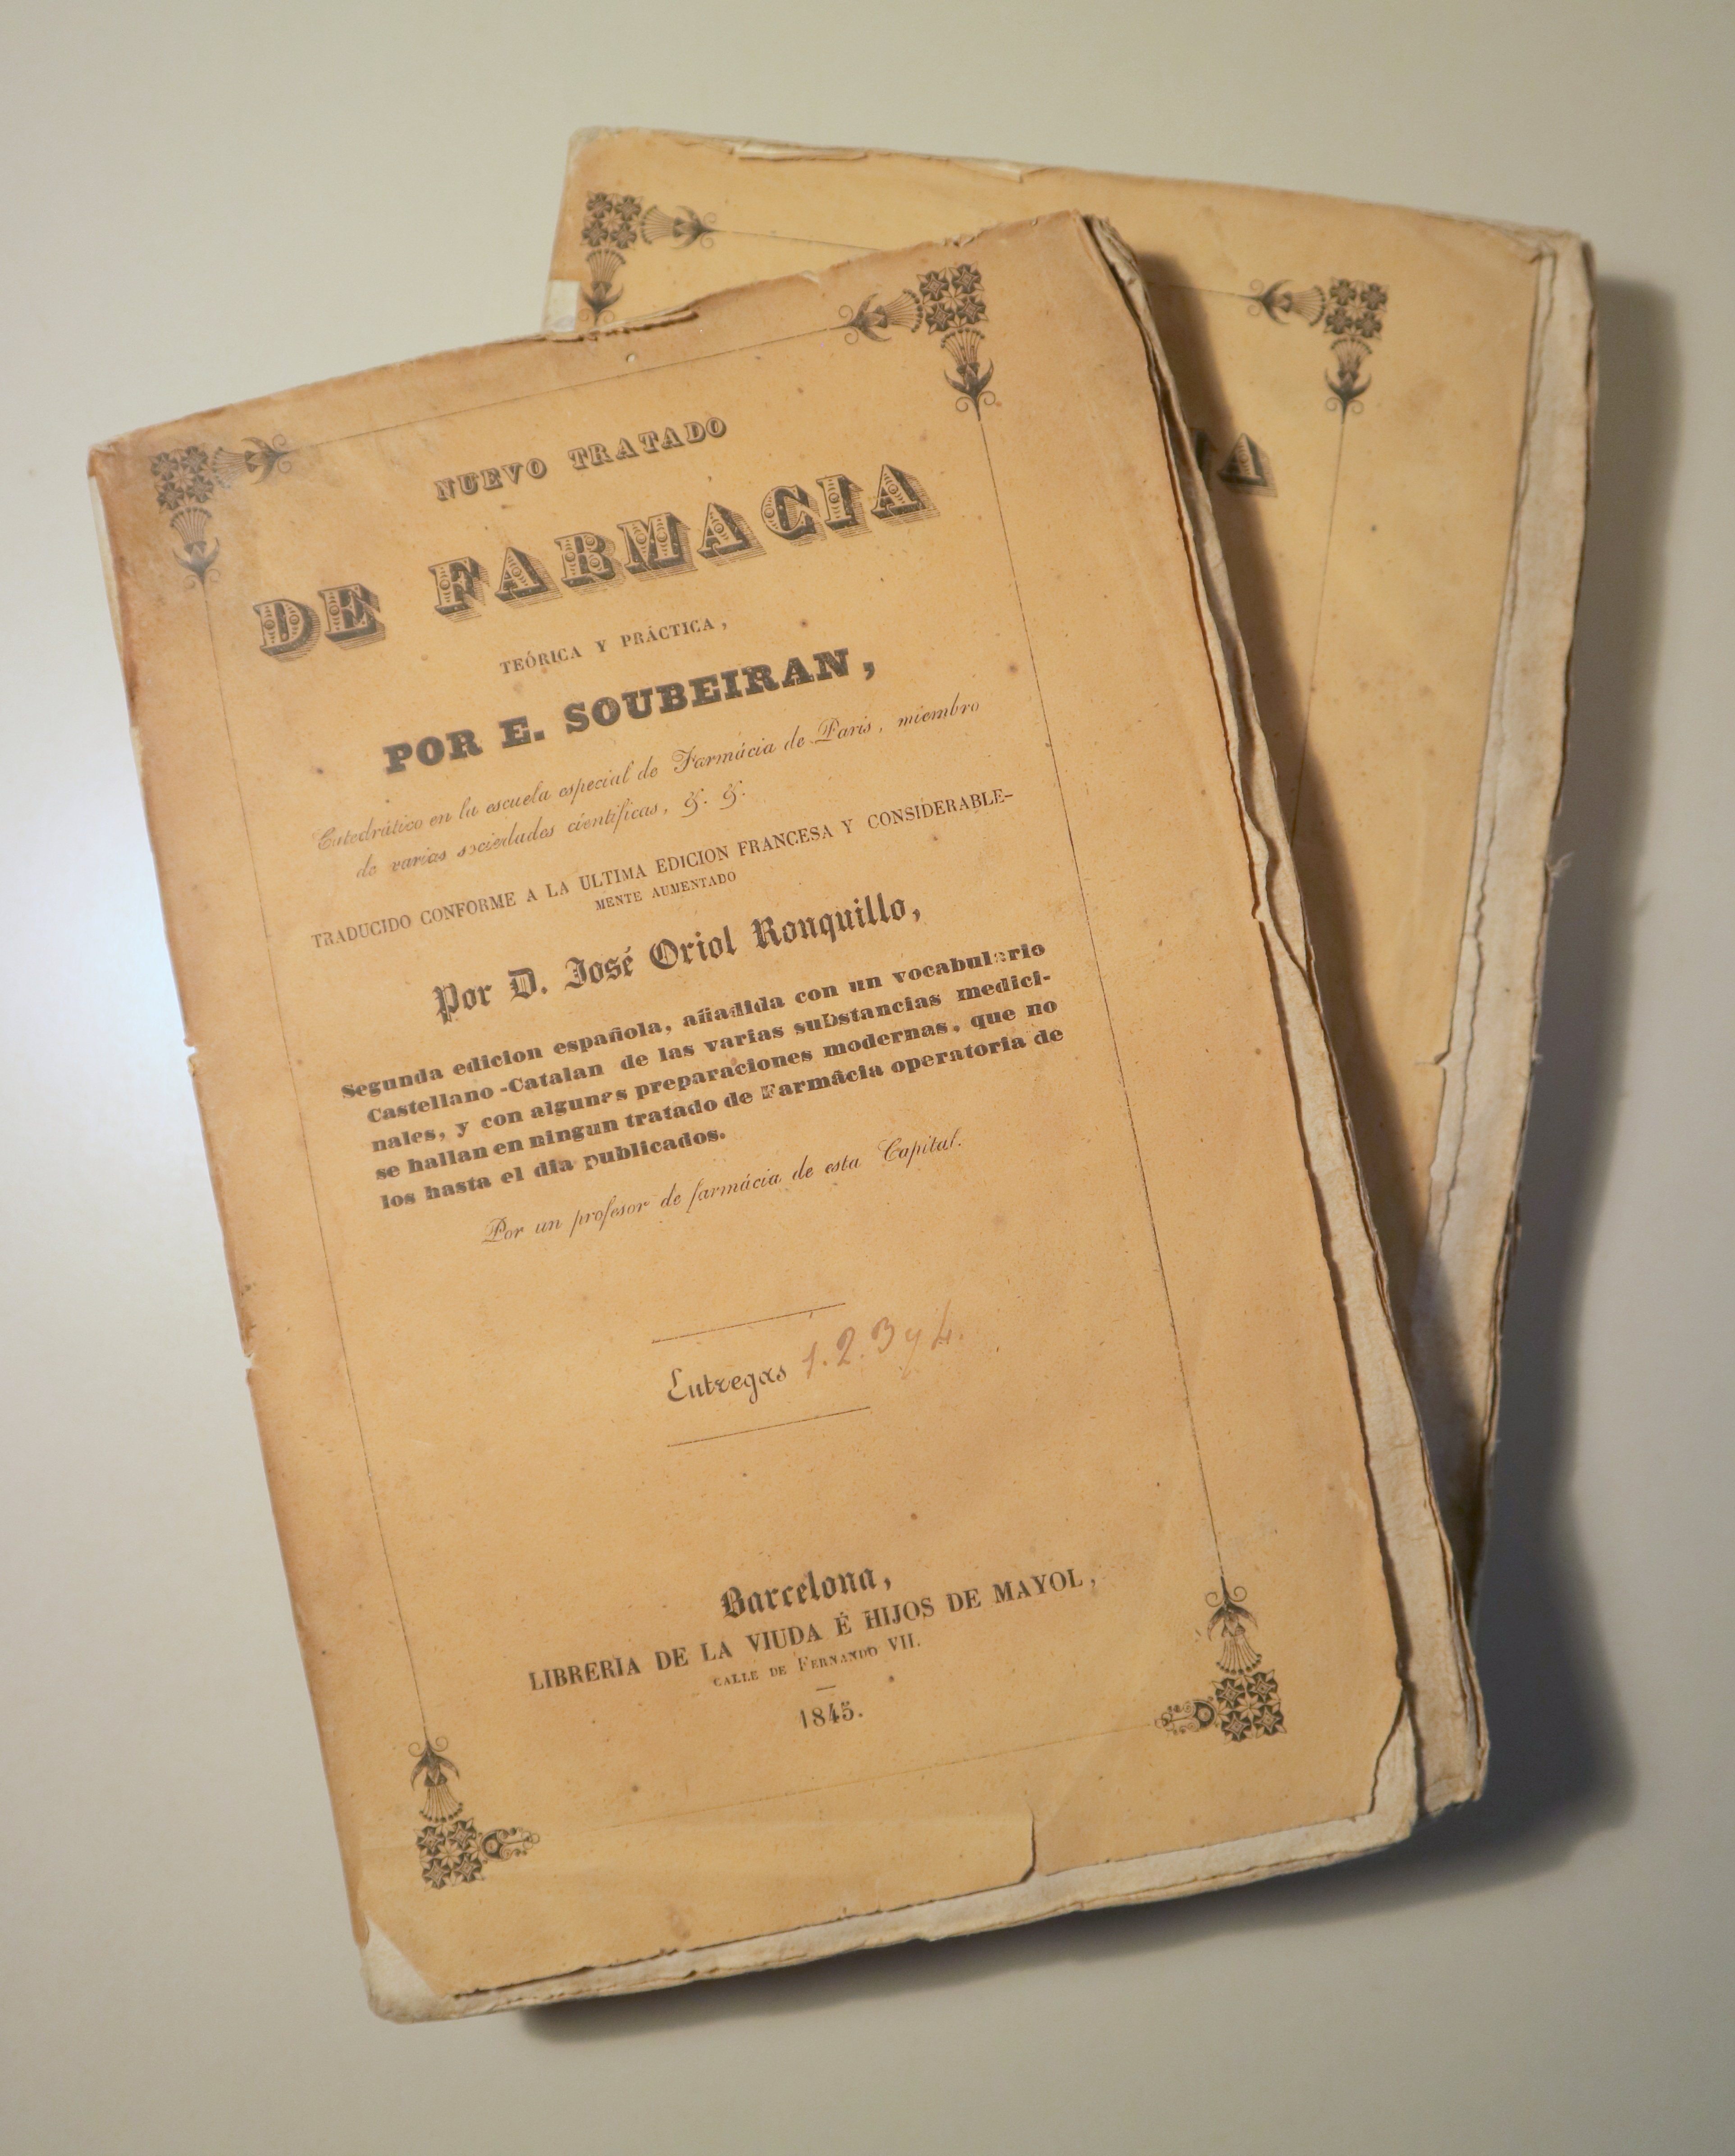 NUEVO TRATADO DE FARMACIA (2 vol.) - Barcelona 1845